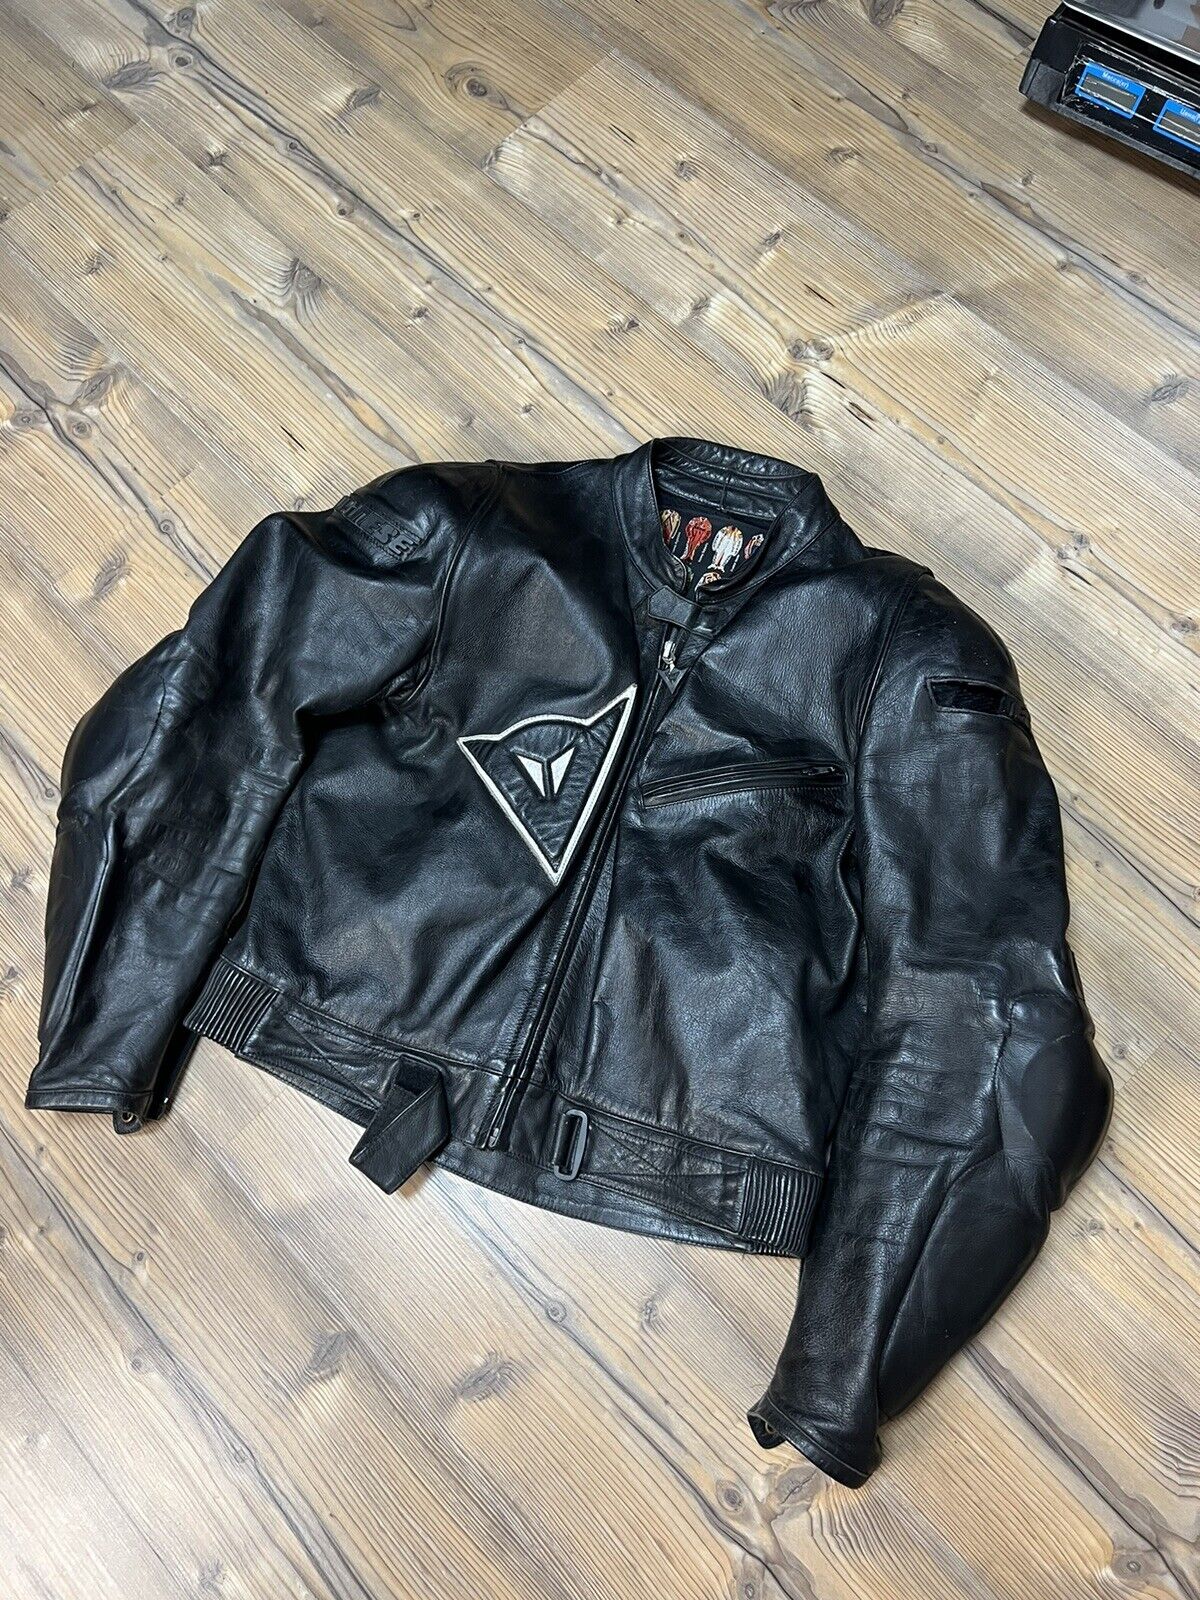 Dainese Vintage Black Leather Big Logo Motorcycle Jacket Size 54